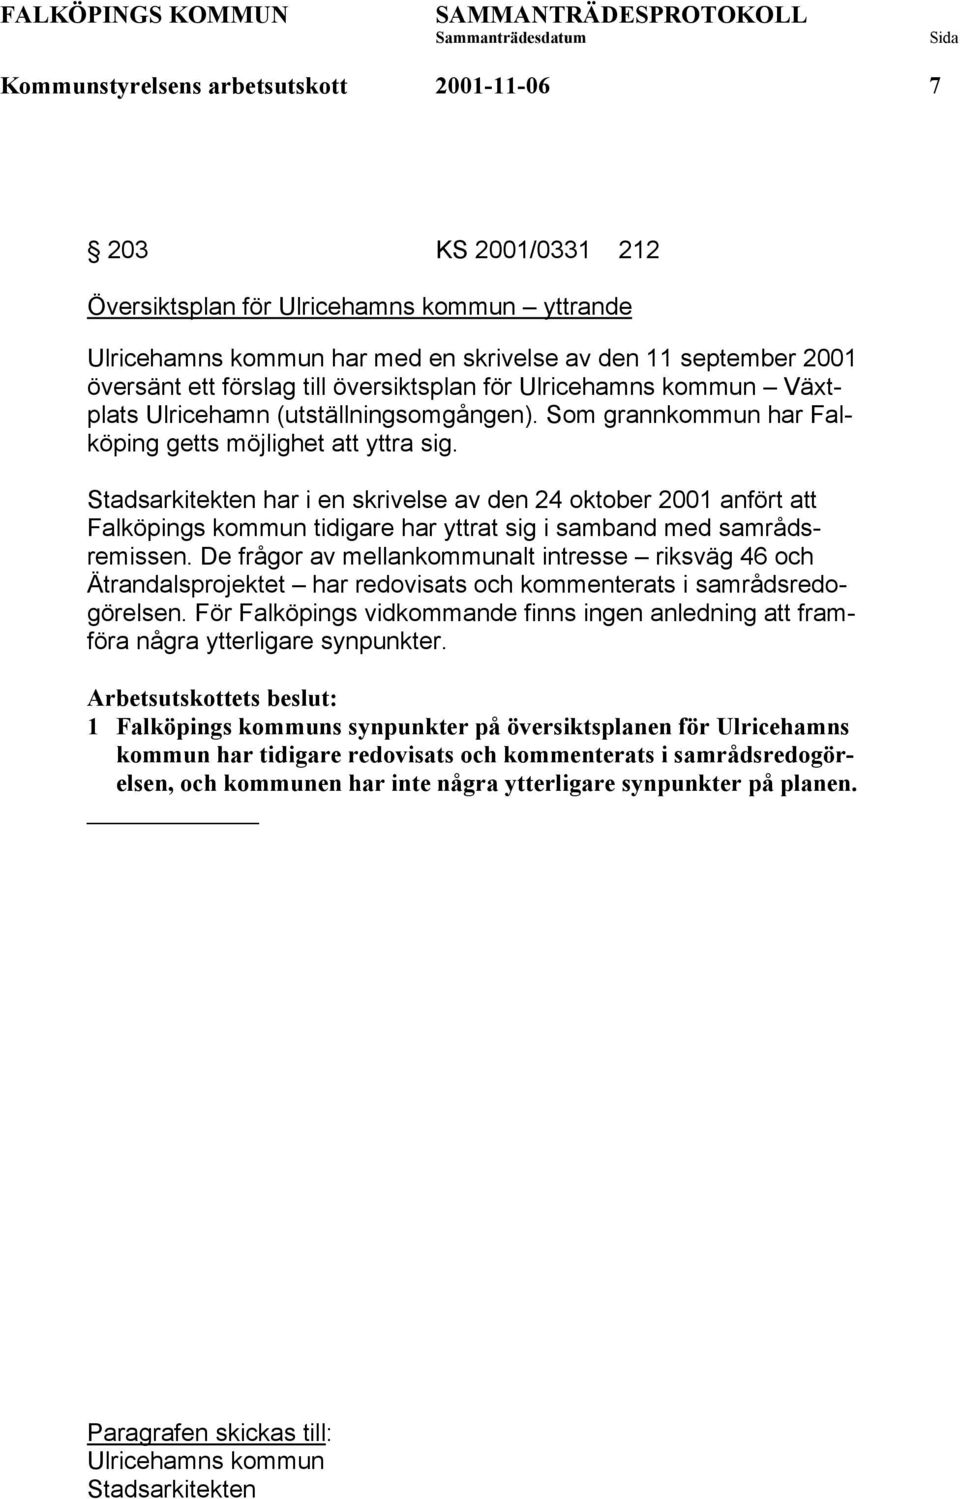 Stadsarkitekten har i en skrivelse av den 24 oktober 2001 anfört att Falköpings kommun tidigare har yttrat sig i samband med samrådsremissen.